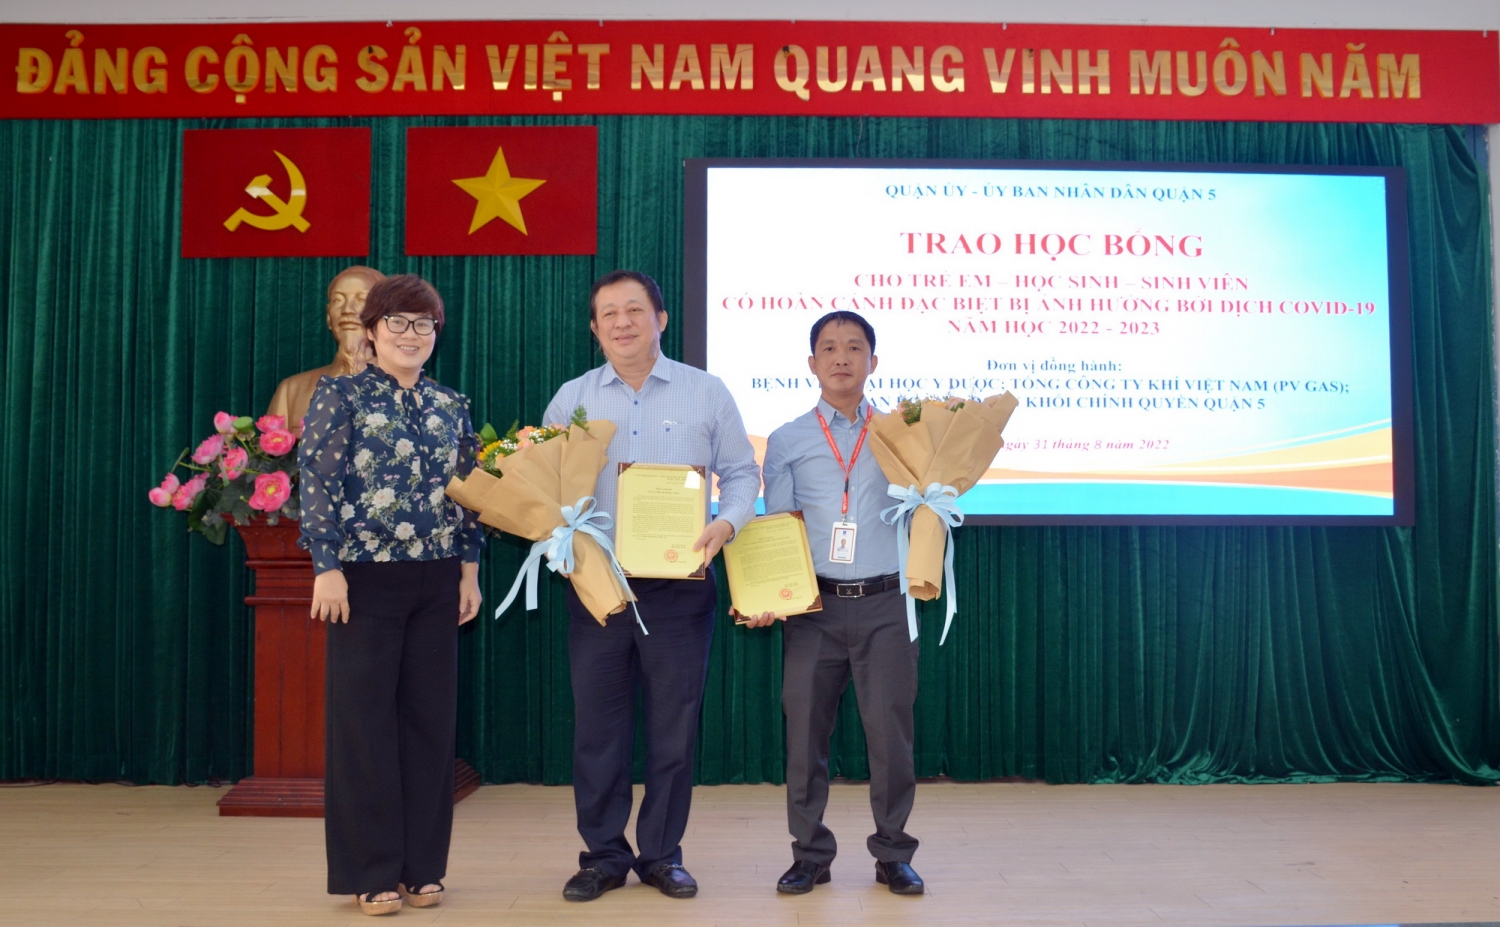 Đại diện lãnh đạo UBND Quận 5 gửi lời cảm ơn đến 2 đơn vị đồng hành: Tổng Công ty Khí Việt Nam và Bệnh viện Đại học Y dược TP. HCM